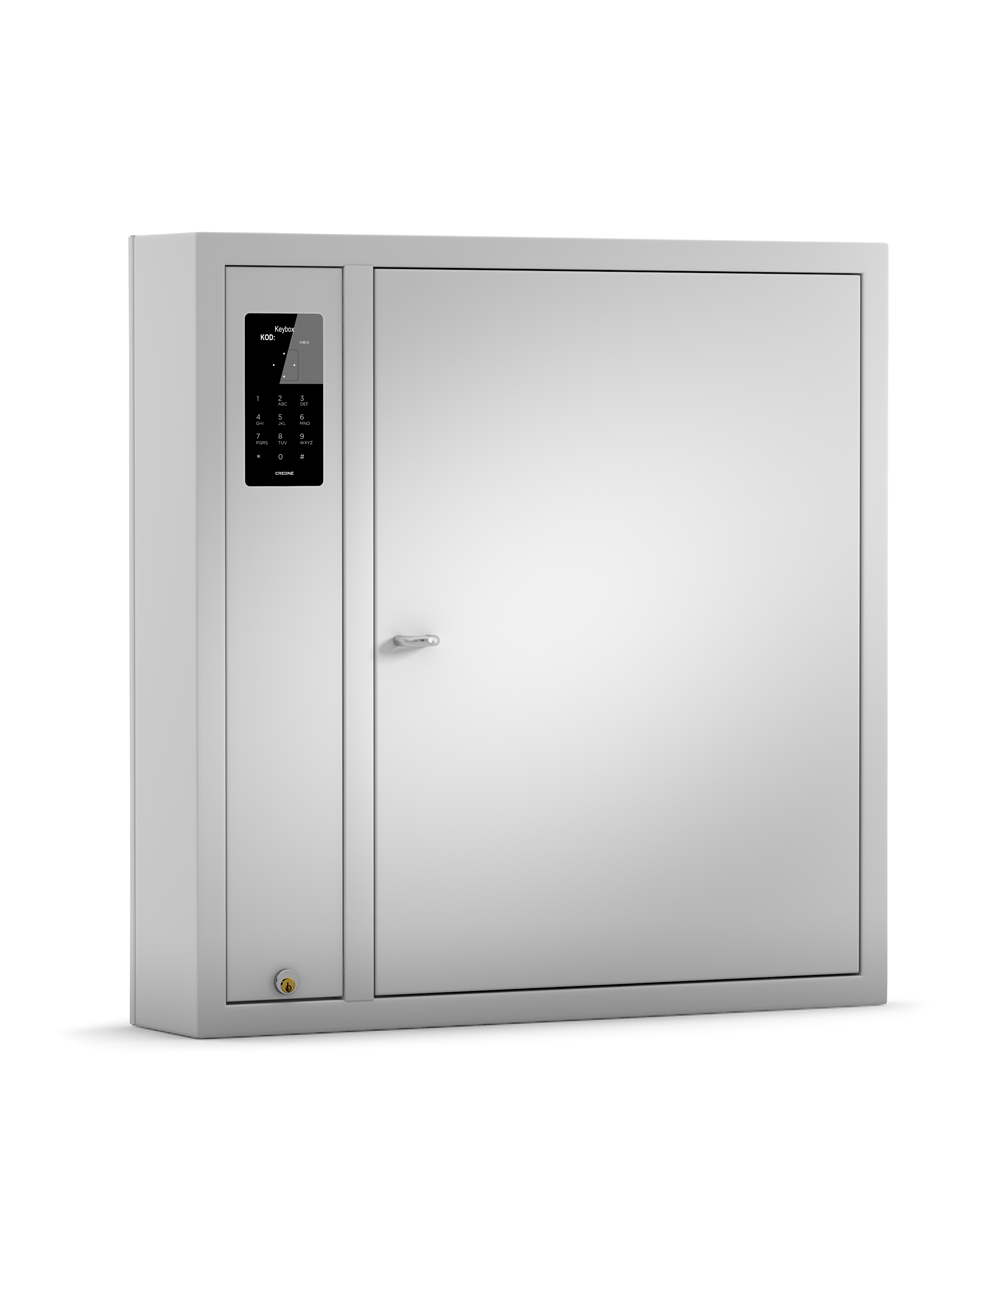 Armoire électrique métal portable ascenseur bloquer ton argent clé sécurité